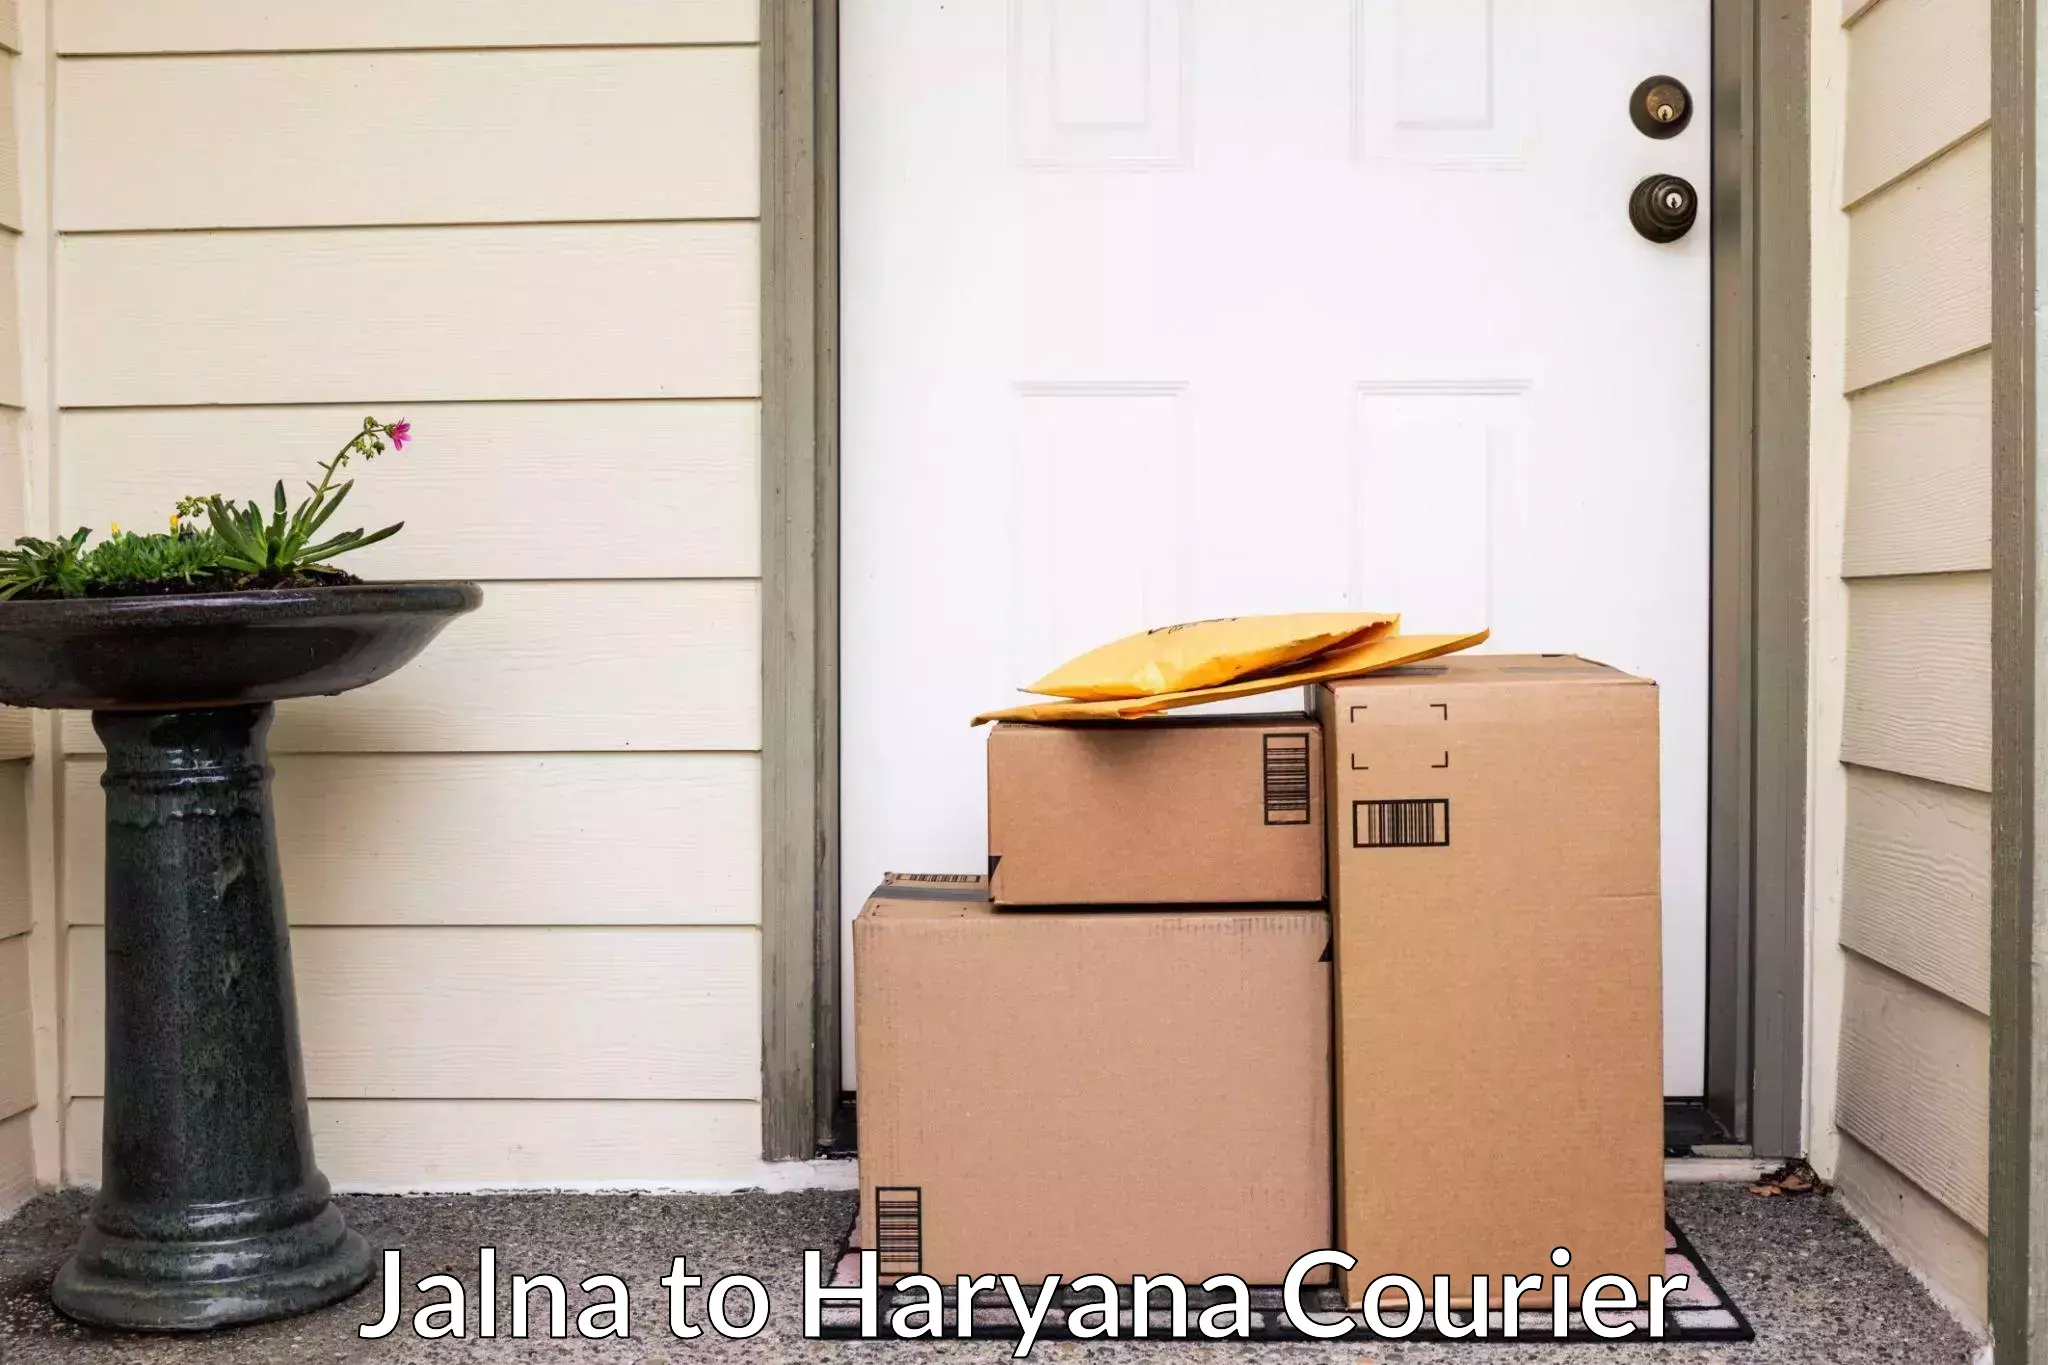 Trusted moving company Jalna to Haryana